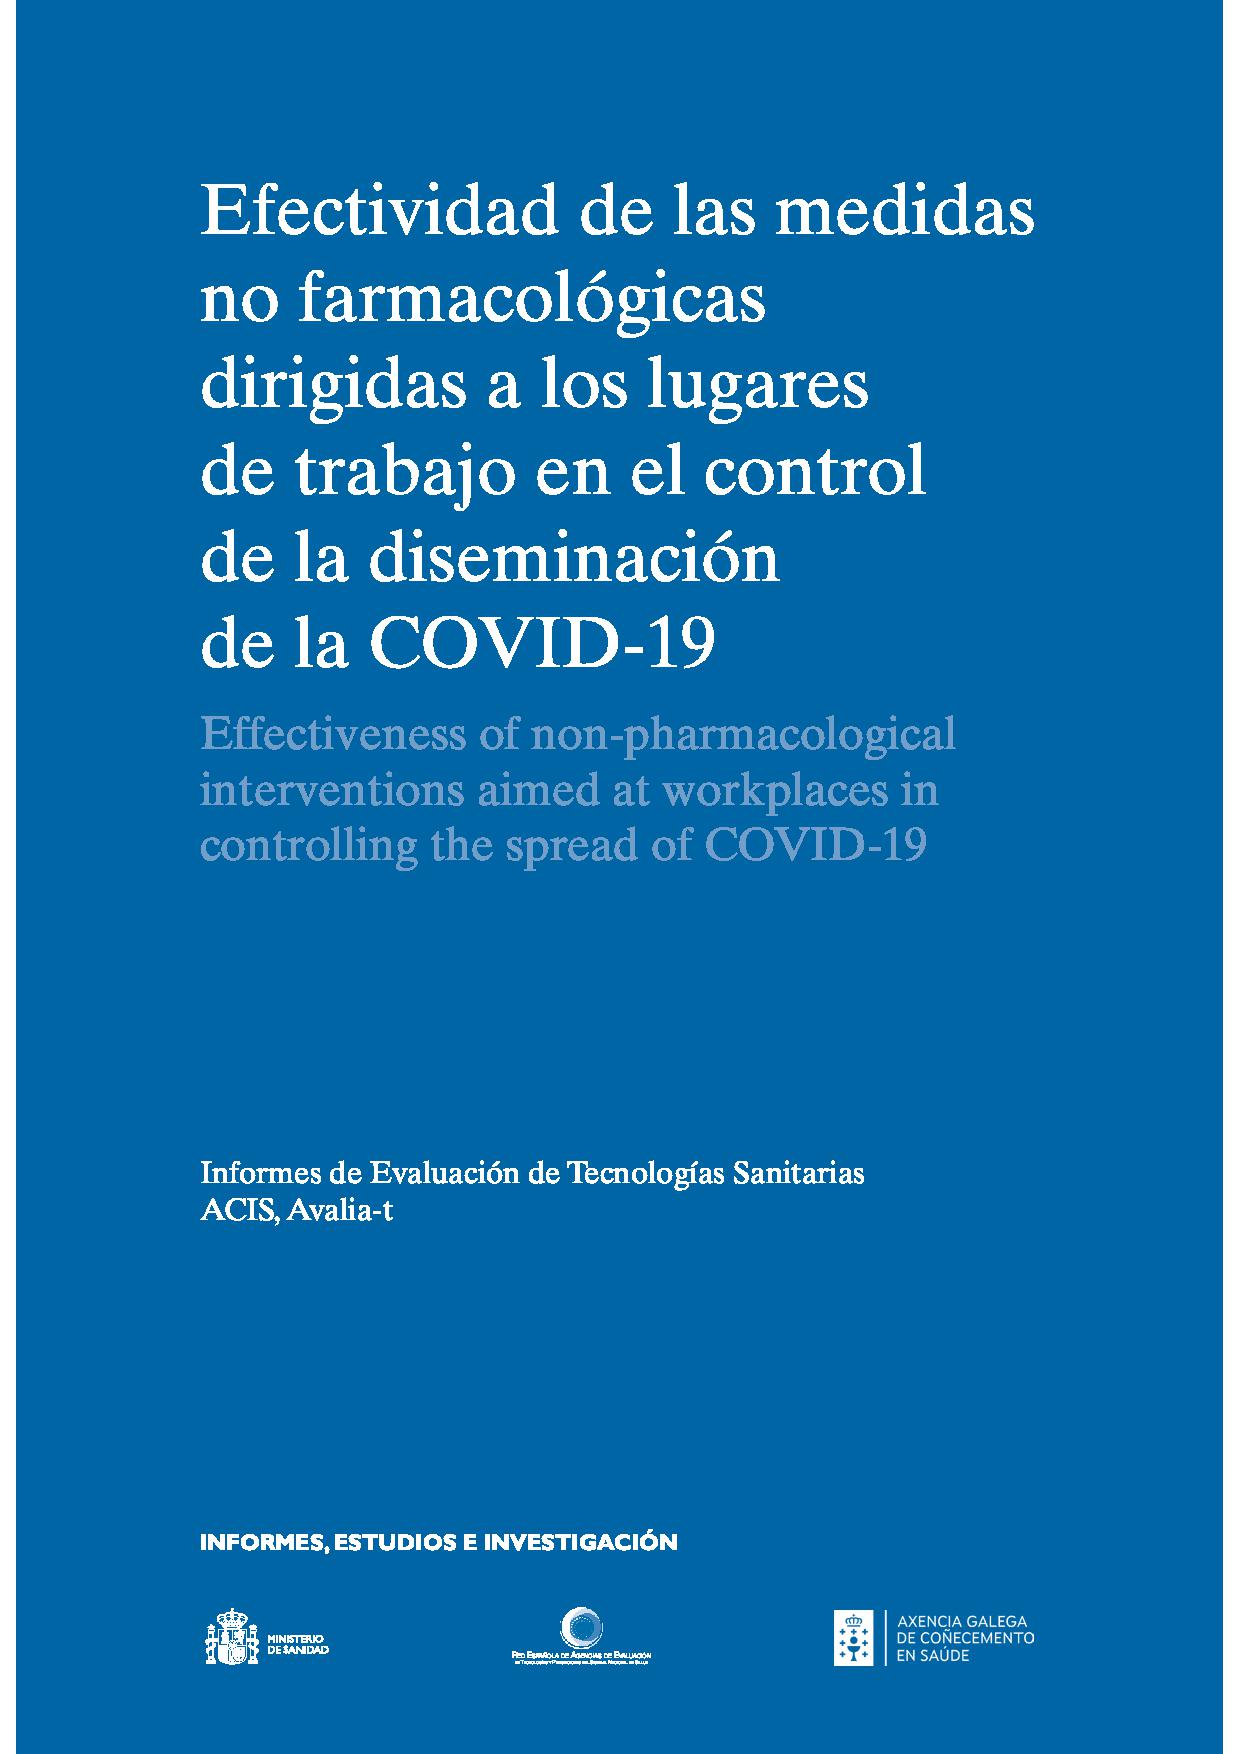 Imagen de portada del libro Efectividad de las medidas no farmacológicas dirigidas a los lugares de trabajo en el control de la diseminaciónde la COVID-19